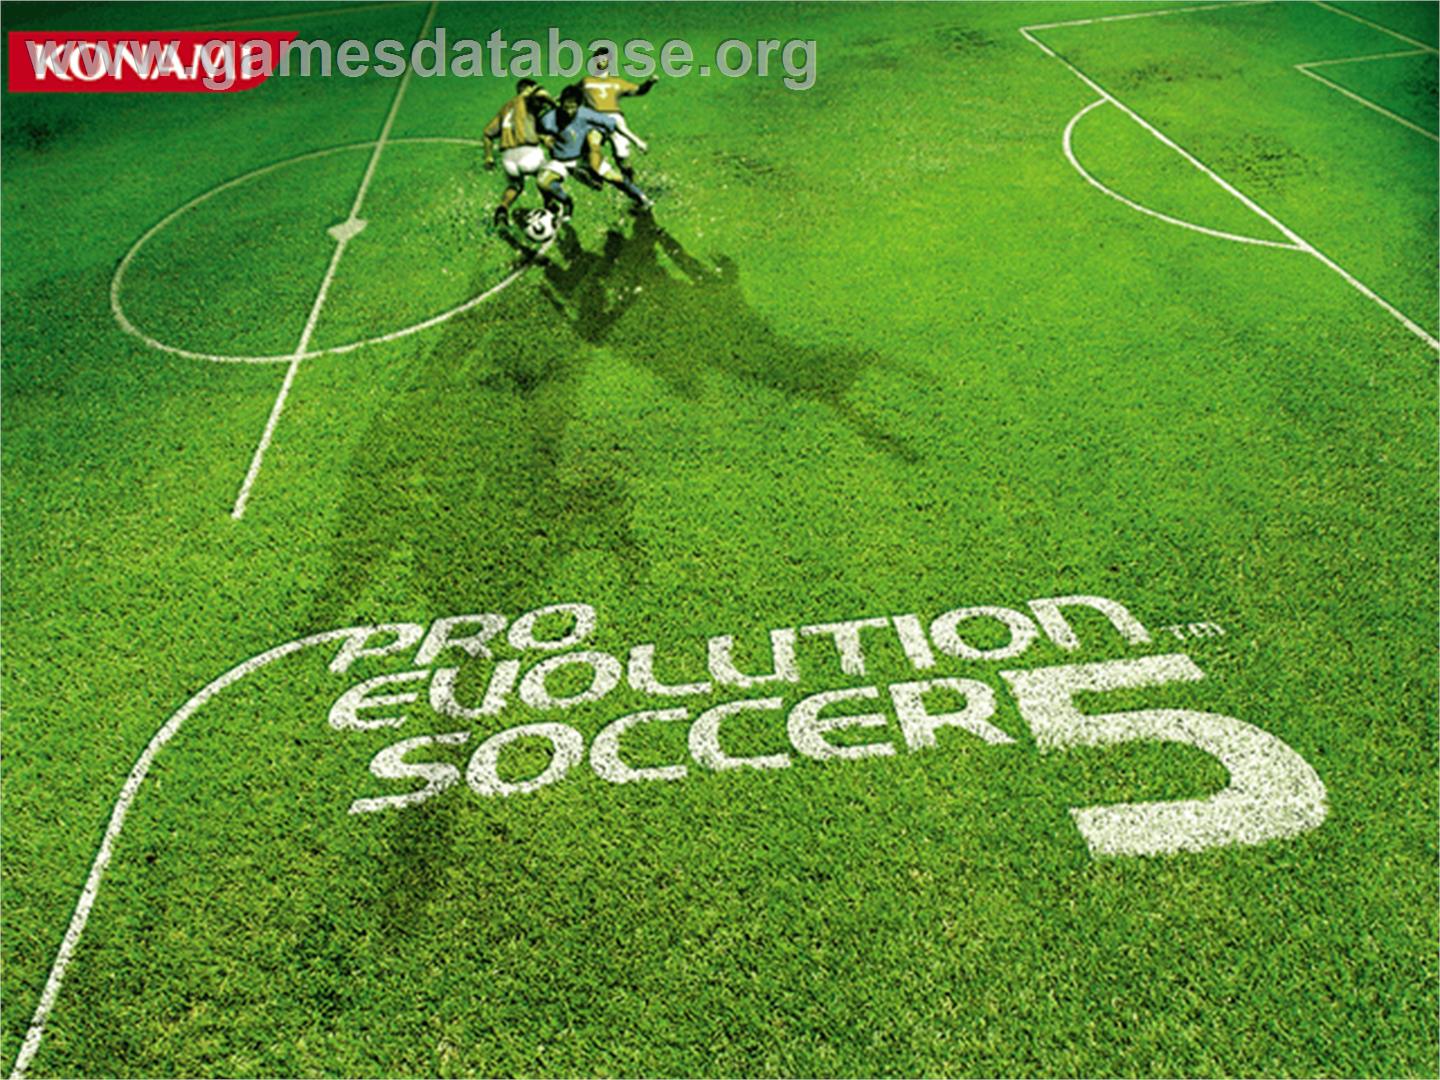 Pro Evolution Soccer 5 - Microsoft Xbox - Artwork - Title Screen